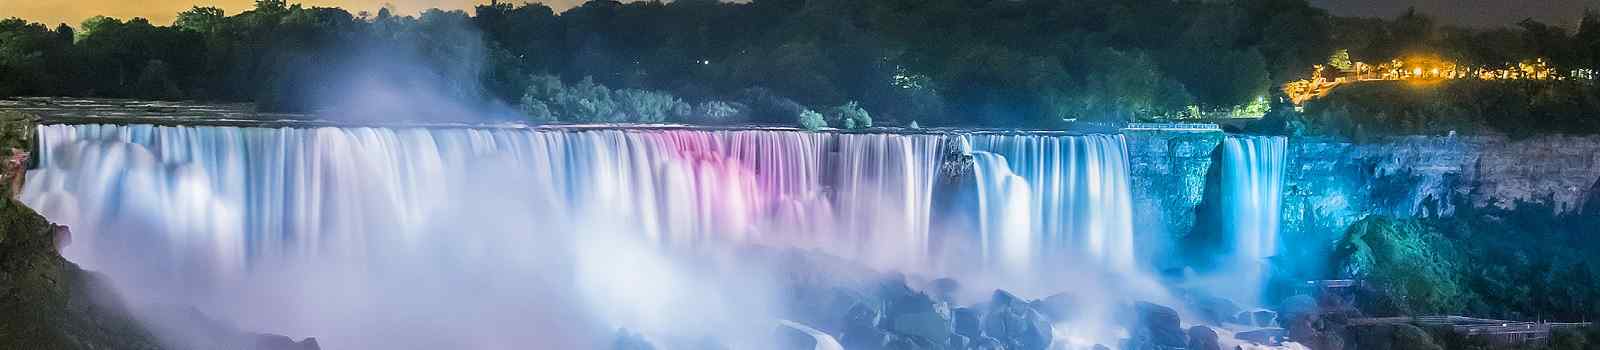 BUS-SIEDLER  Juwelen des Nordostens Niagarafaelle farbenfroh beleuchtet in der Nacht